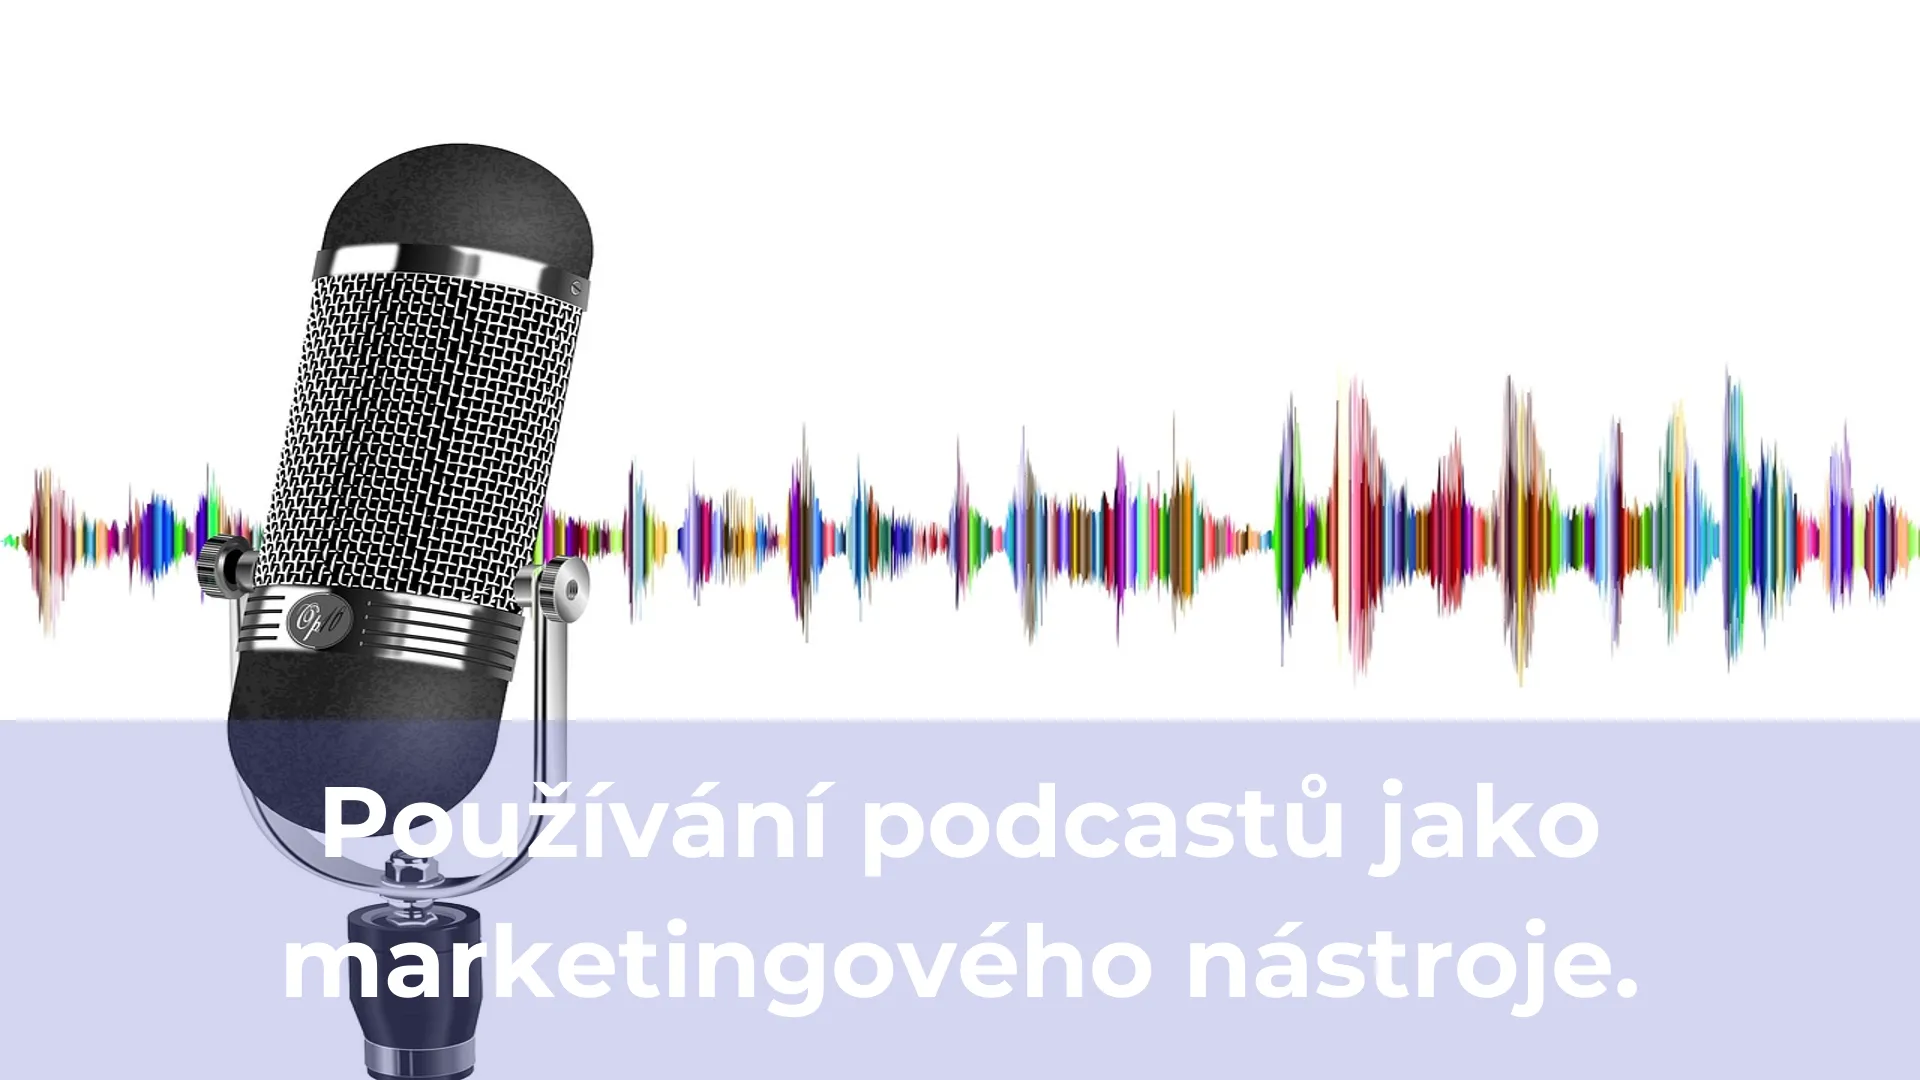 Používání podcastů jako marketingového nástroje